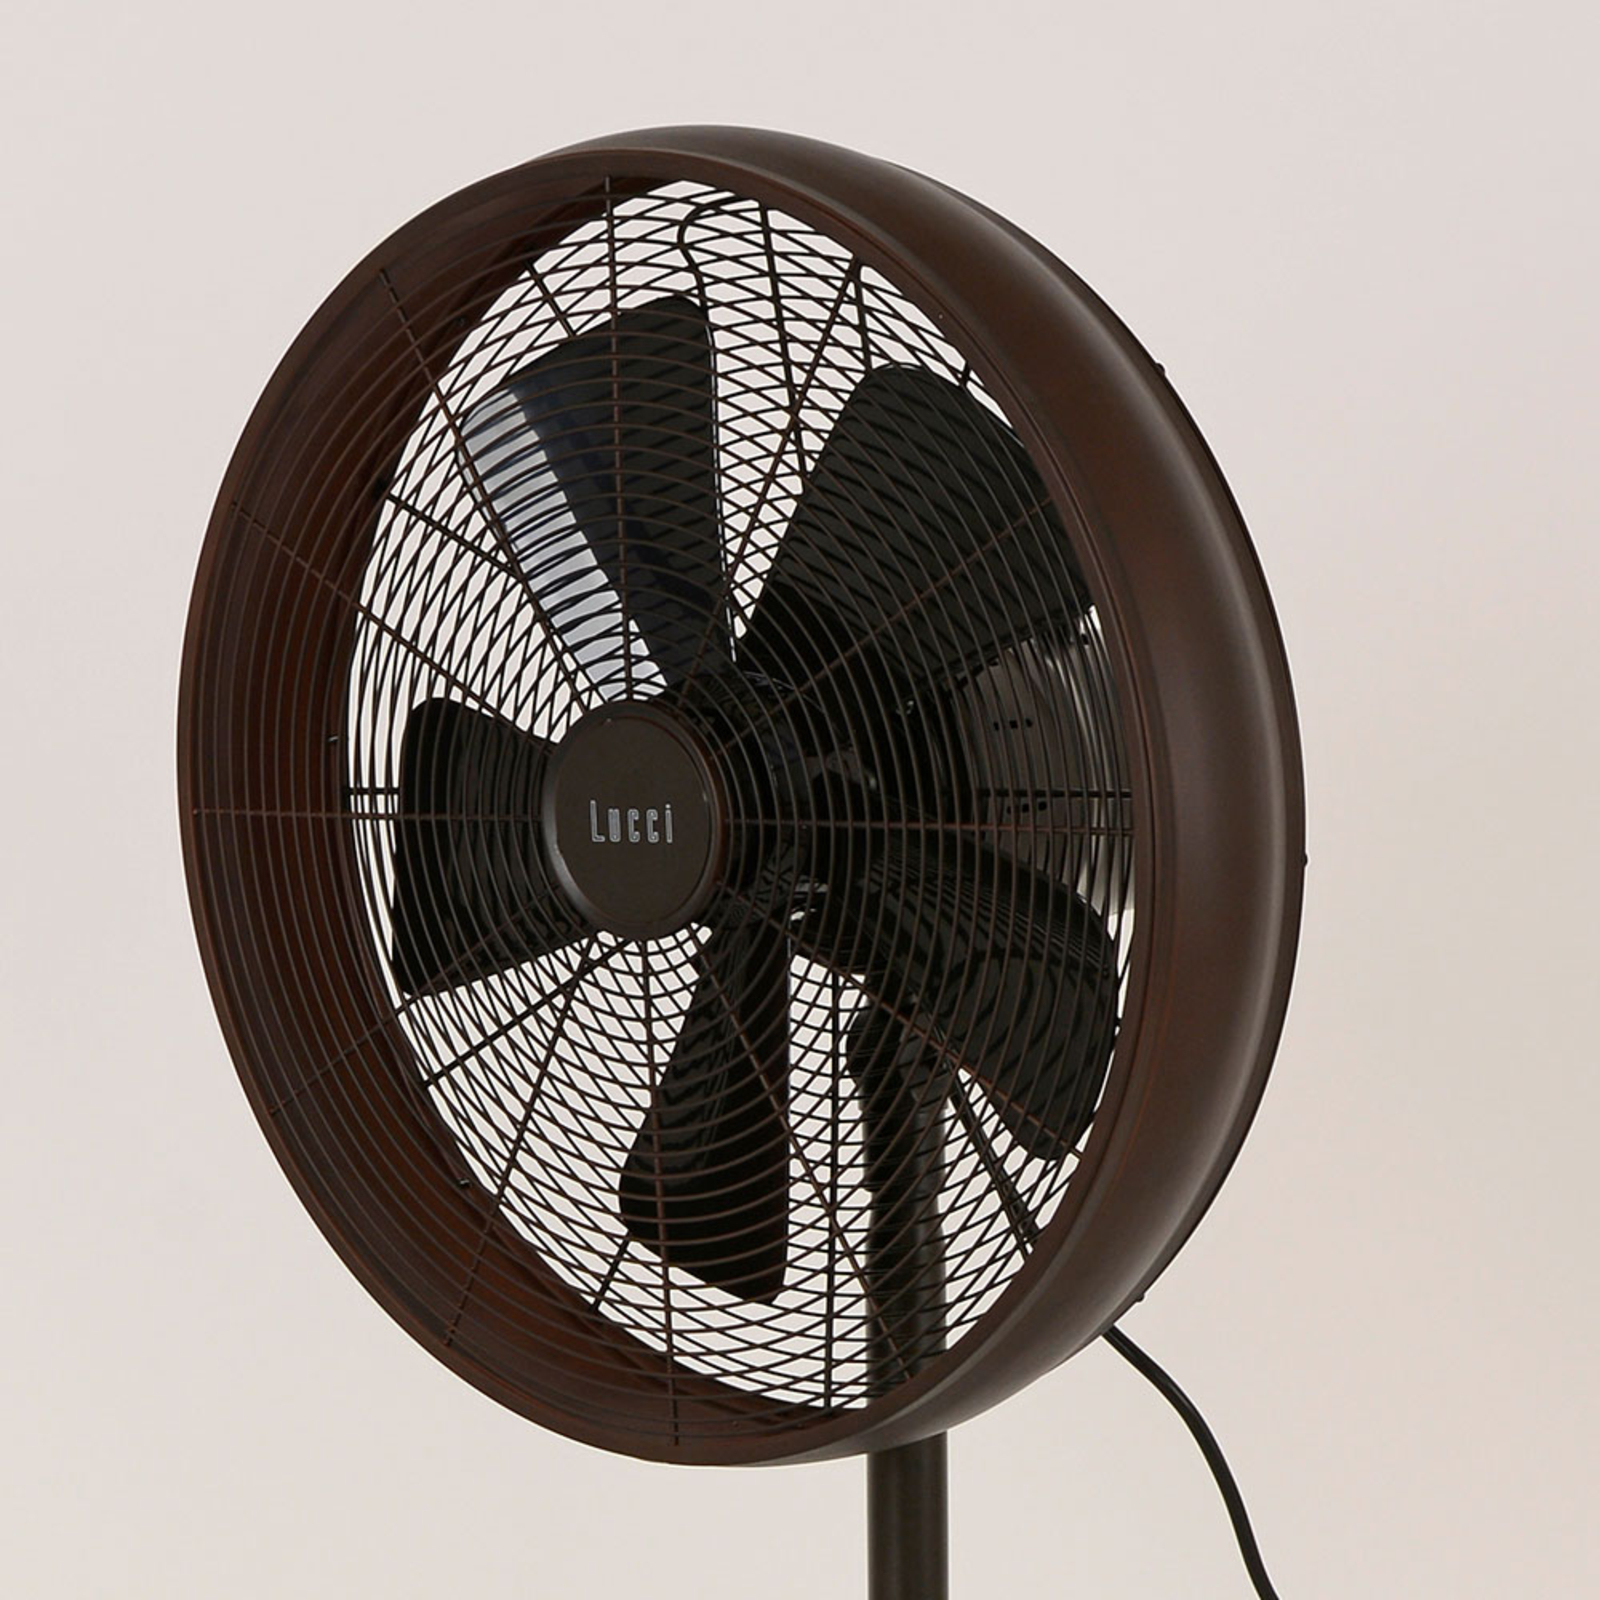 Beacon állványos ventilátor Breeze bronz színű, kerek talapzat, csendes